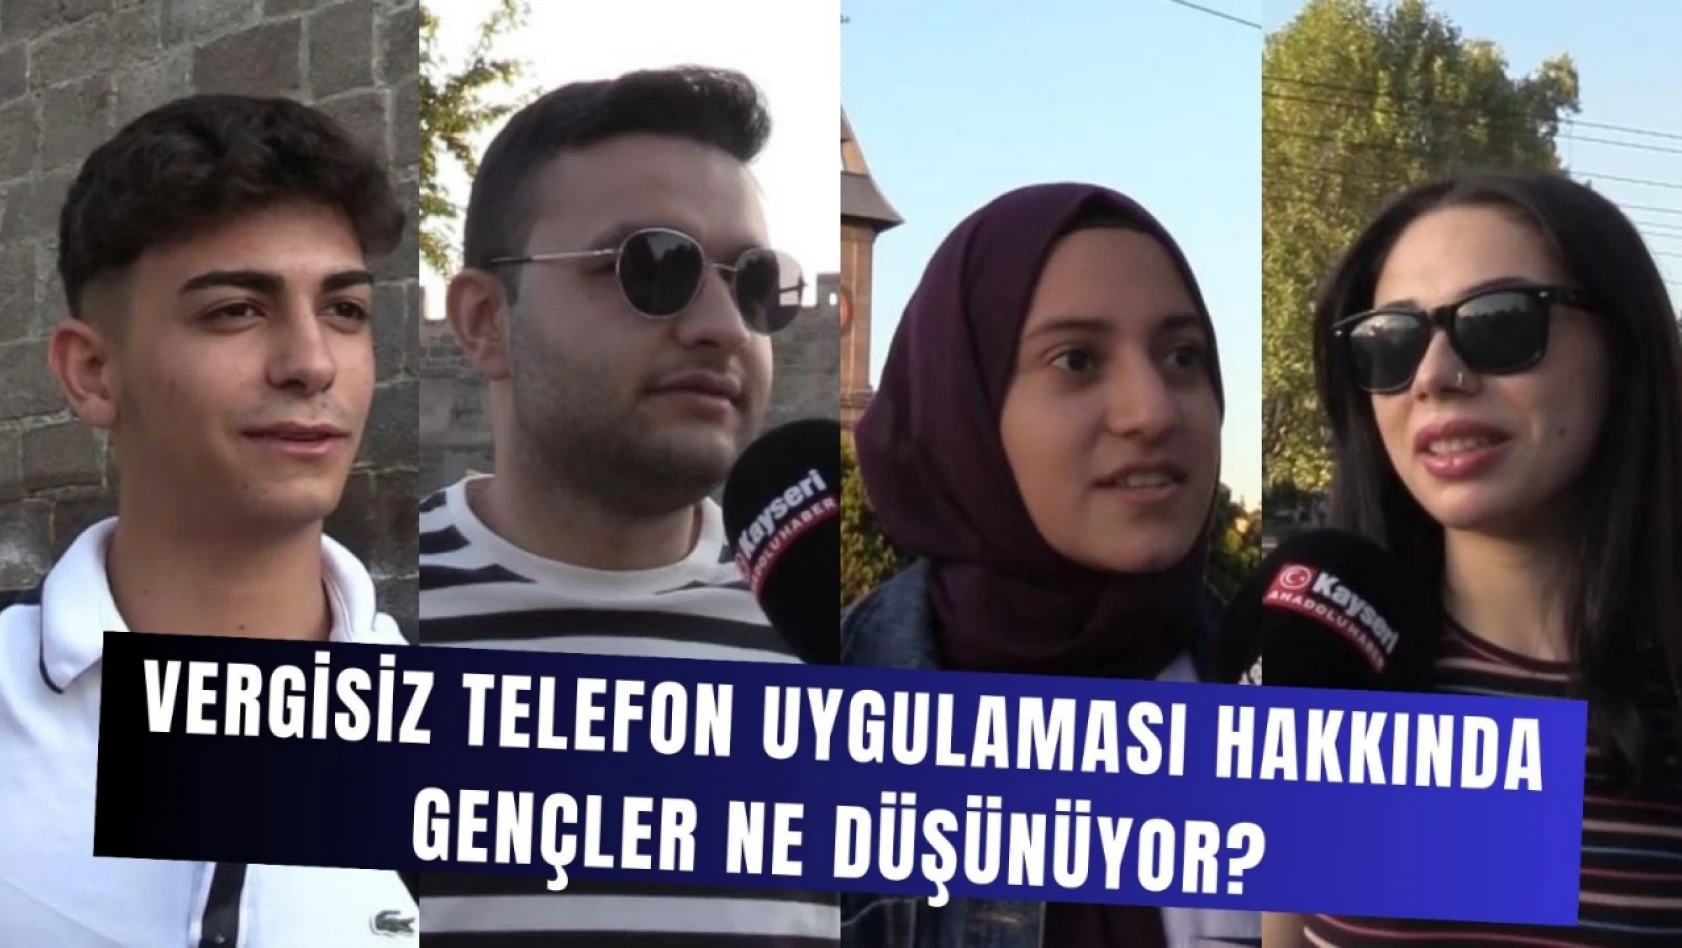 Vergisiz telefon uygulaması hakkında gençler ne düşünüyor? – Anadolu'da Z Raporu